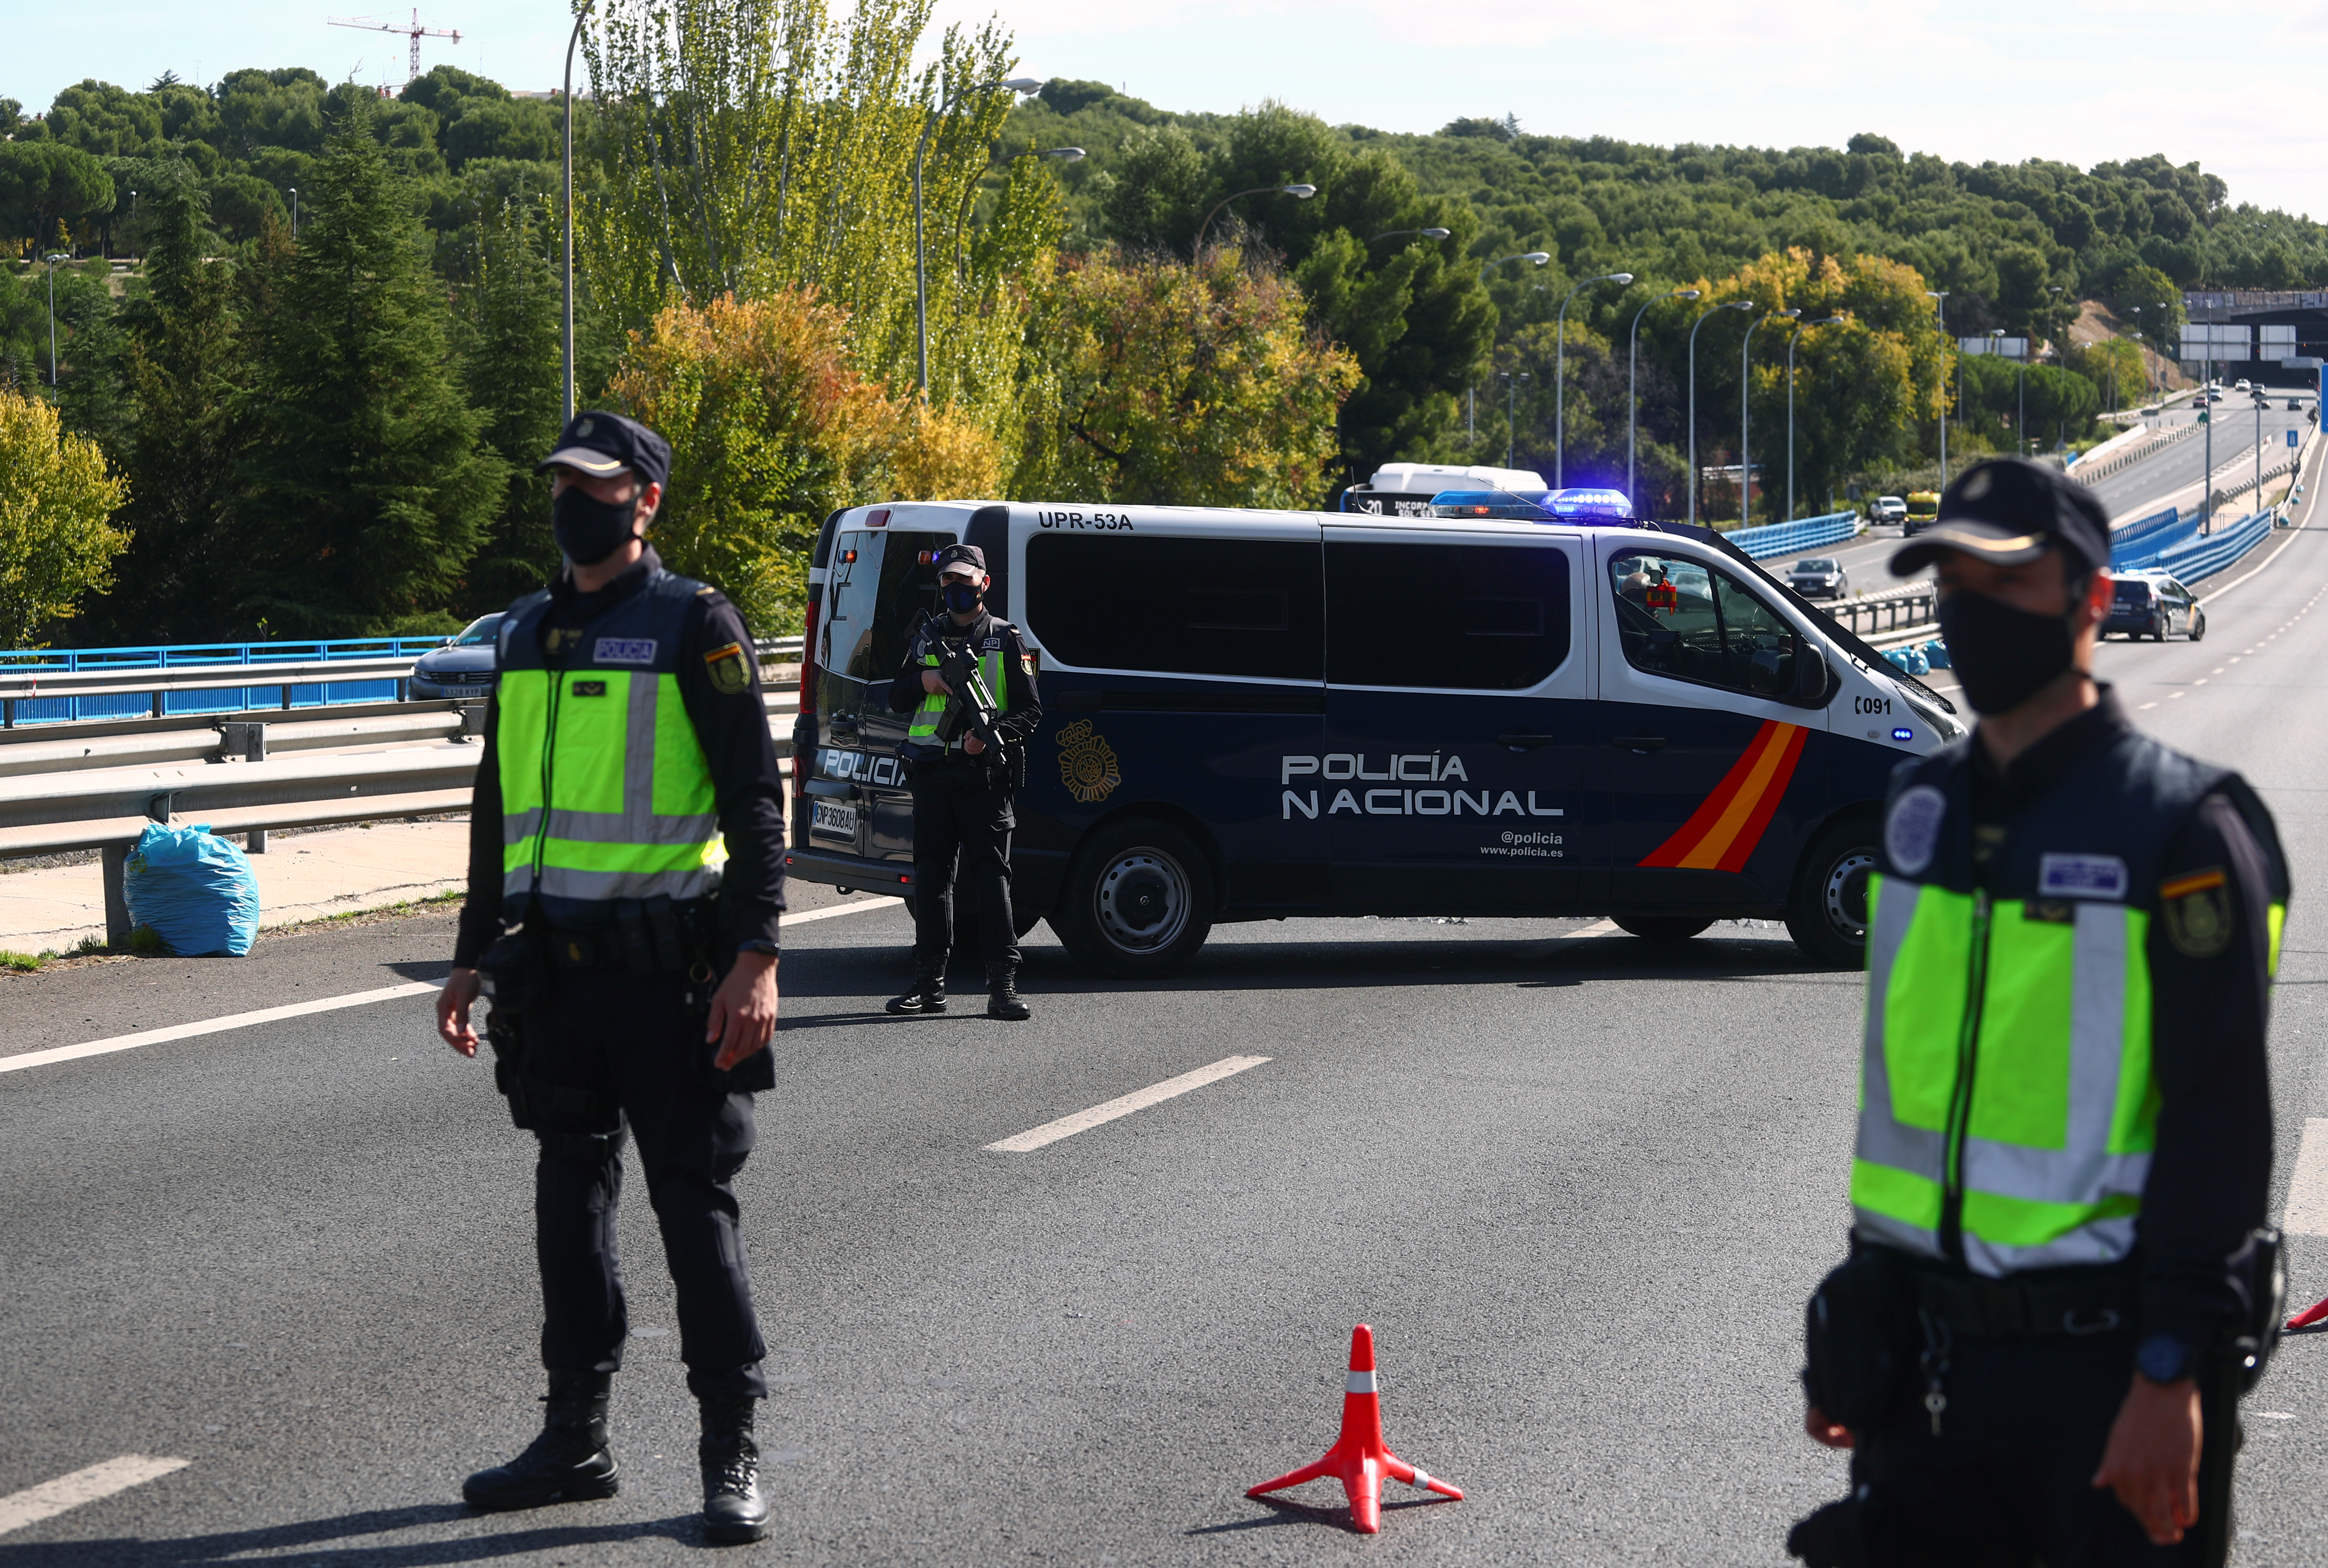 Oficiales de la Policía Nacional visten mascarillas protectoras en un puesto de control de tránsito en las afueras de Madrid (REUTERS/Sergio Perez)